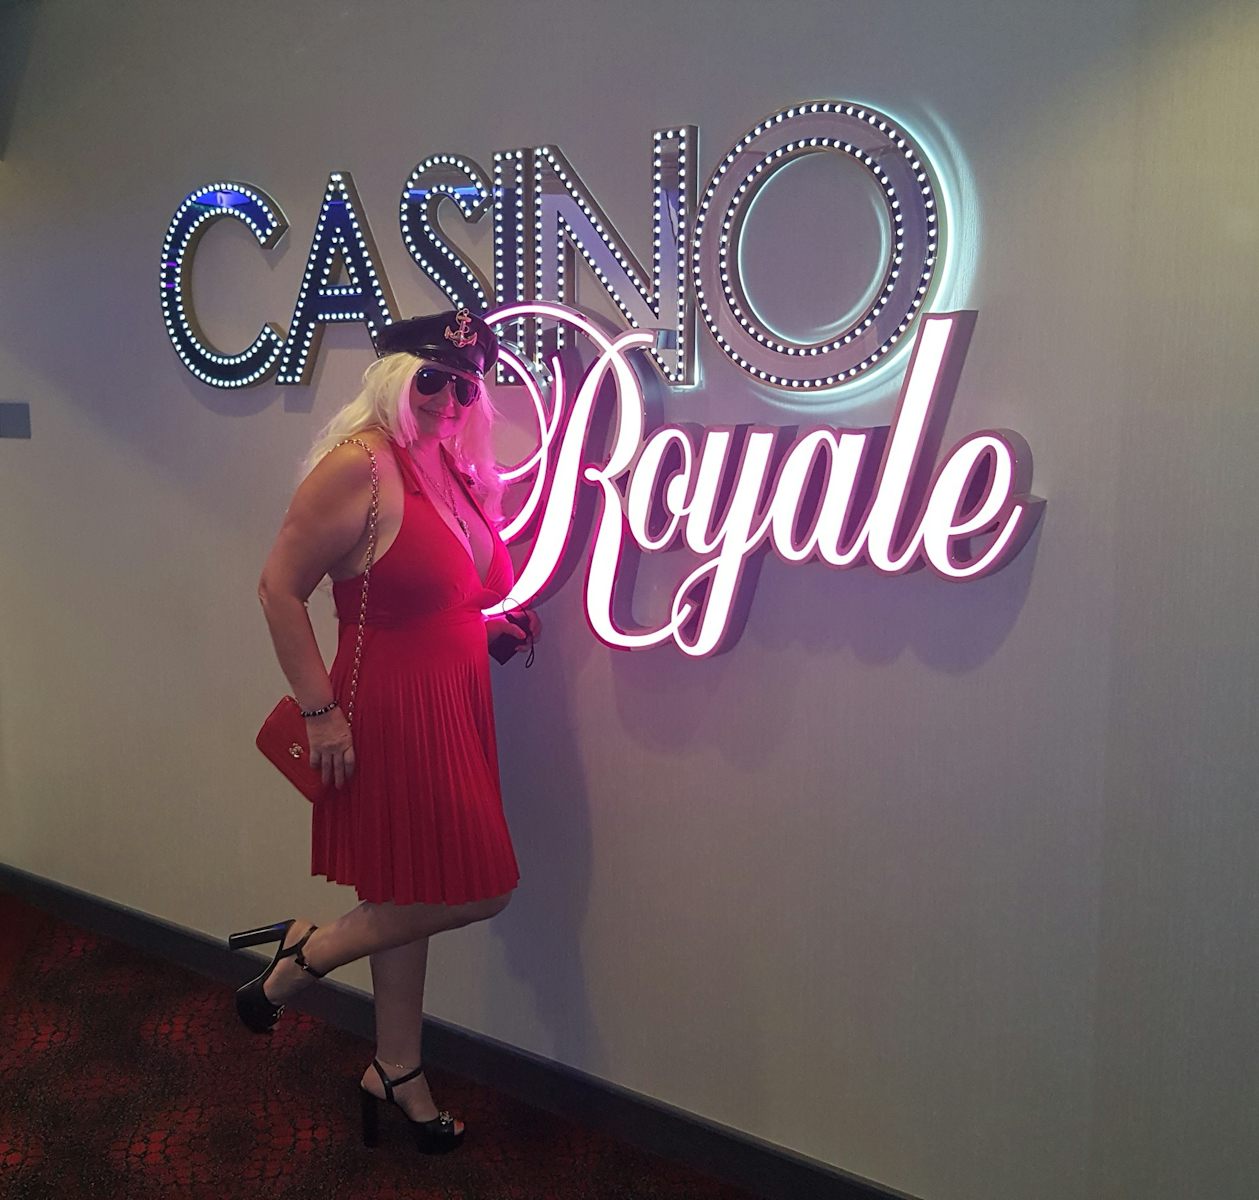 Casino Royale amazing!